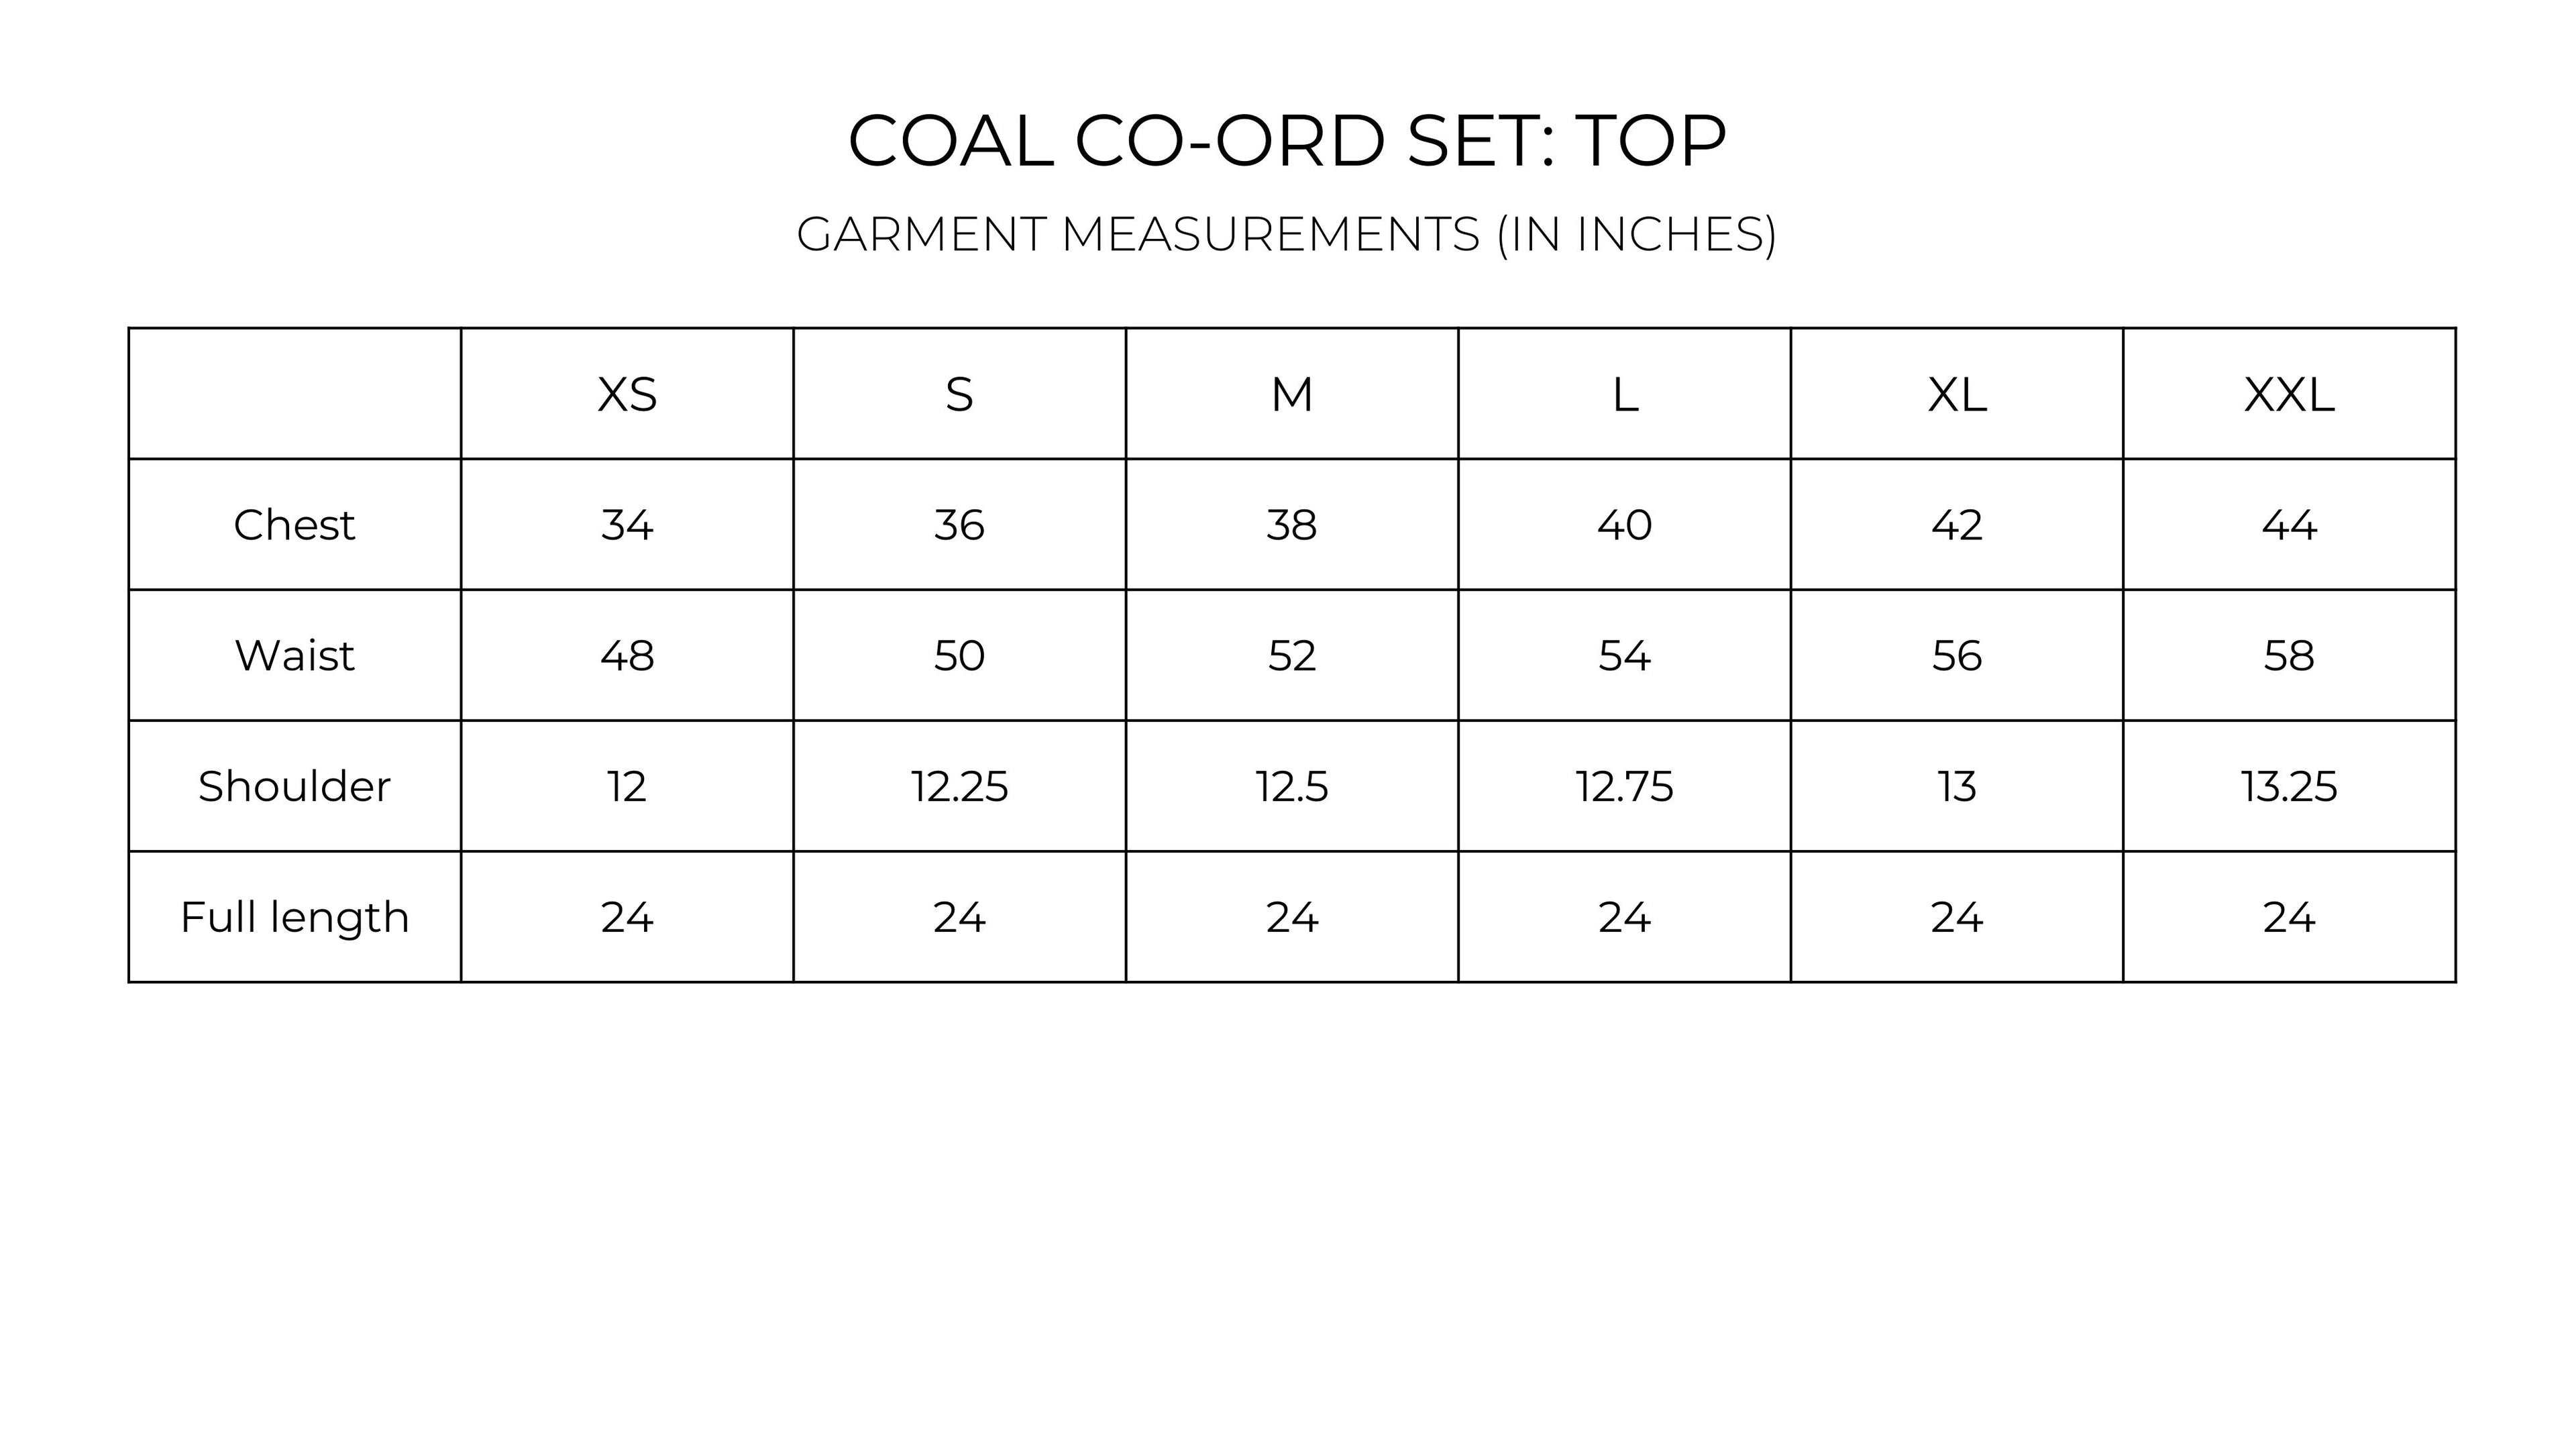 Coal Co-ord set